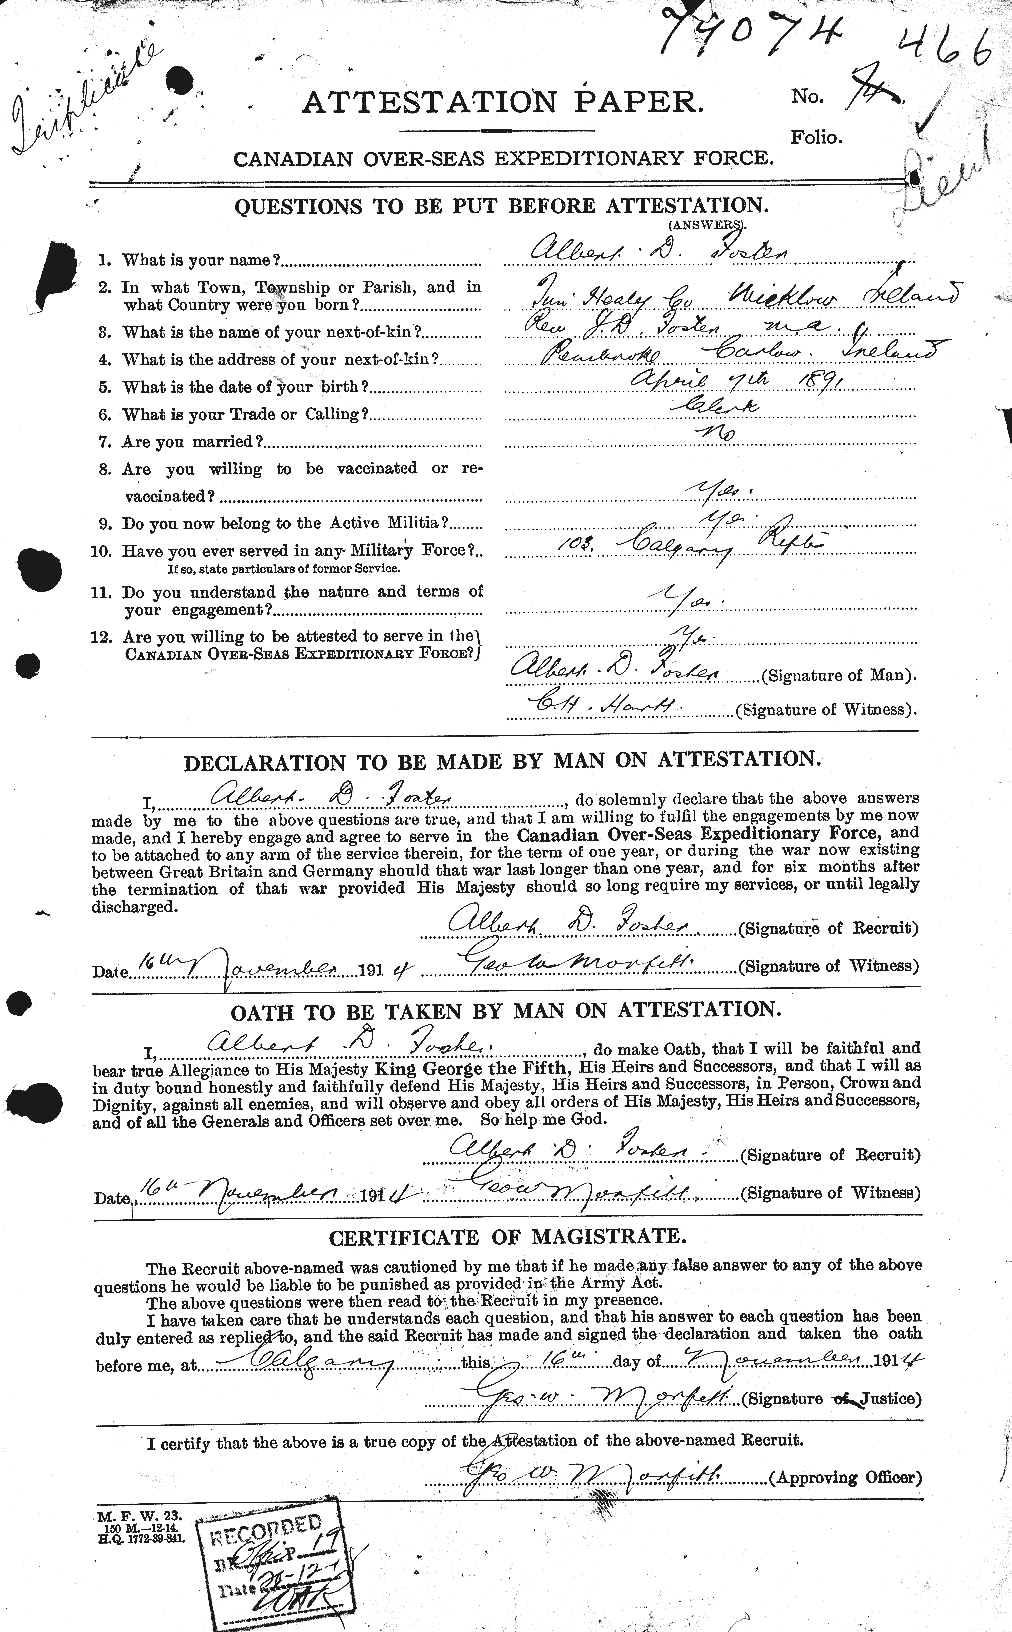 Dossiers du Personnel de la Première Guerre mondiale - CEC 330433a